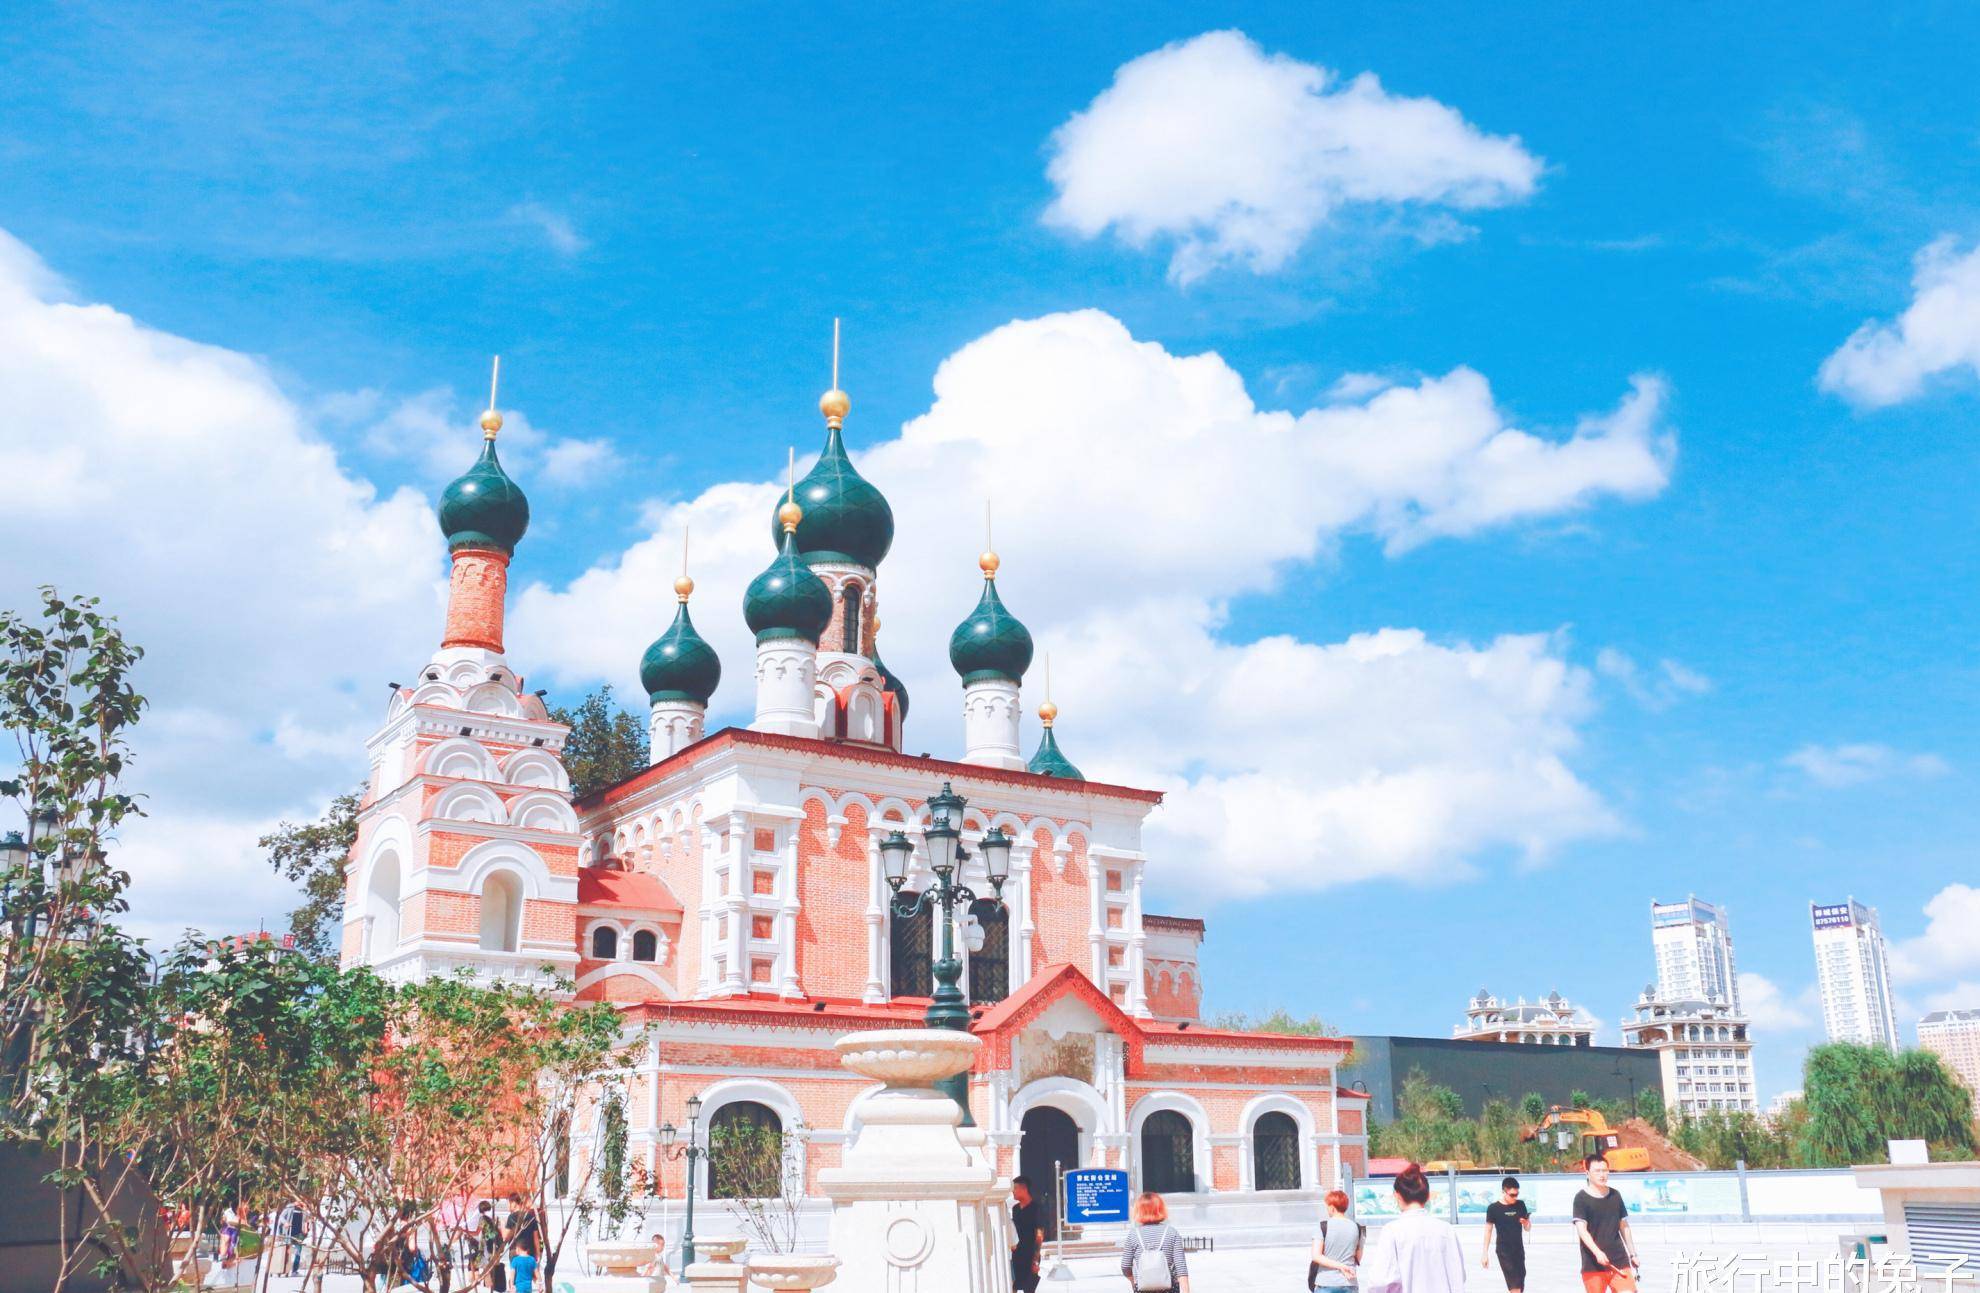 原创哈尔滨火车站旁有座教堂,俄罗斯风情引游客打卡,其实是个坟场